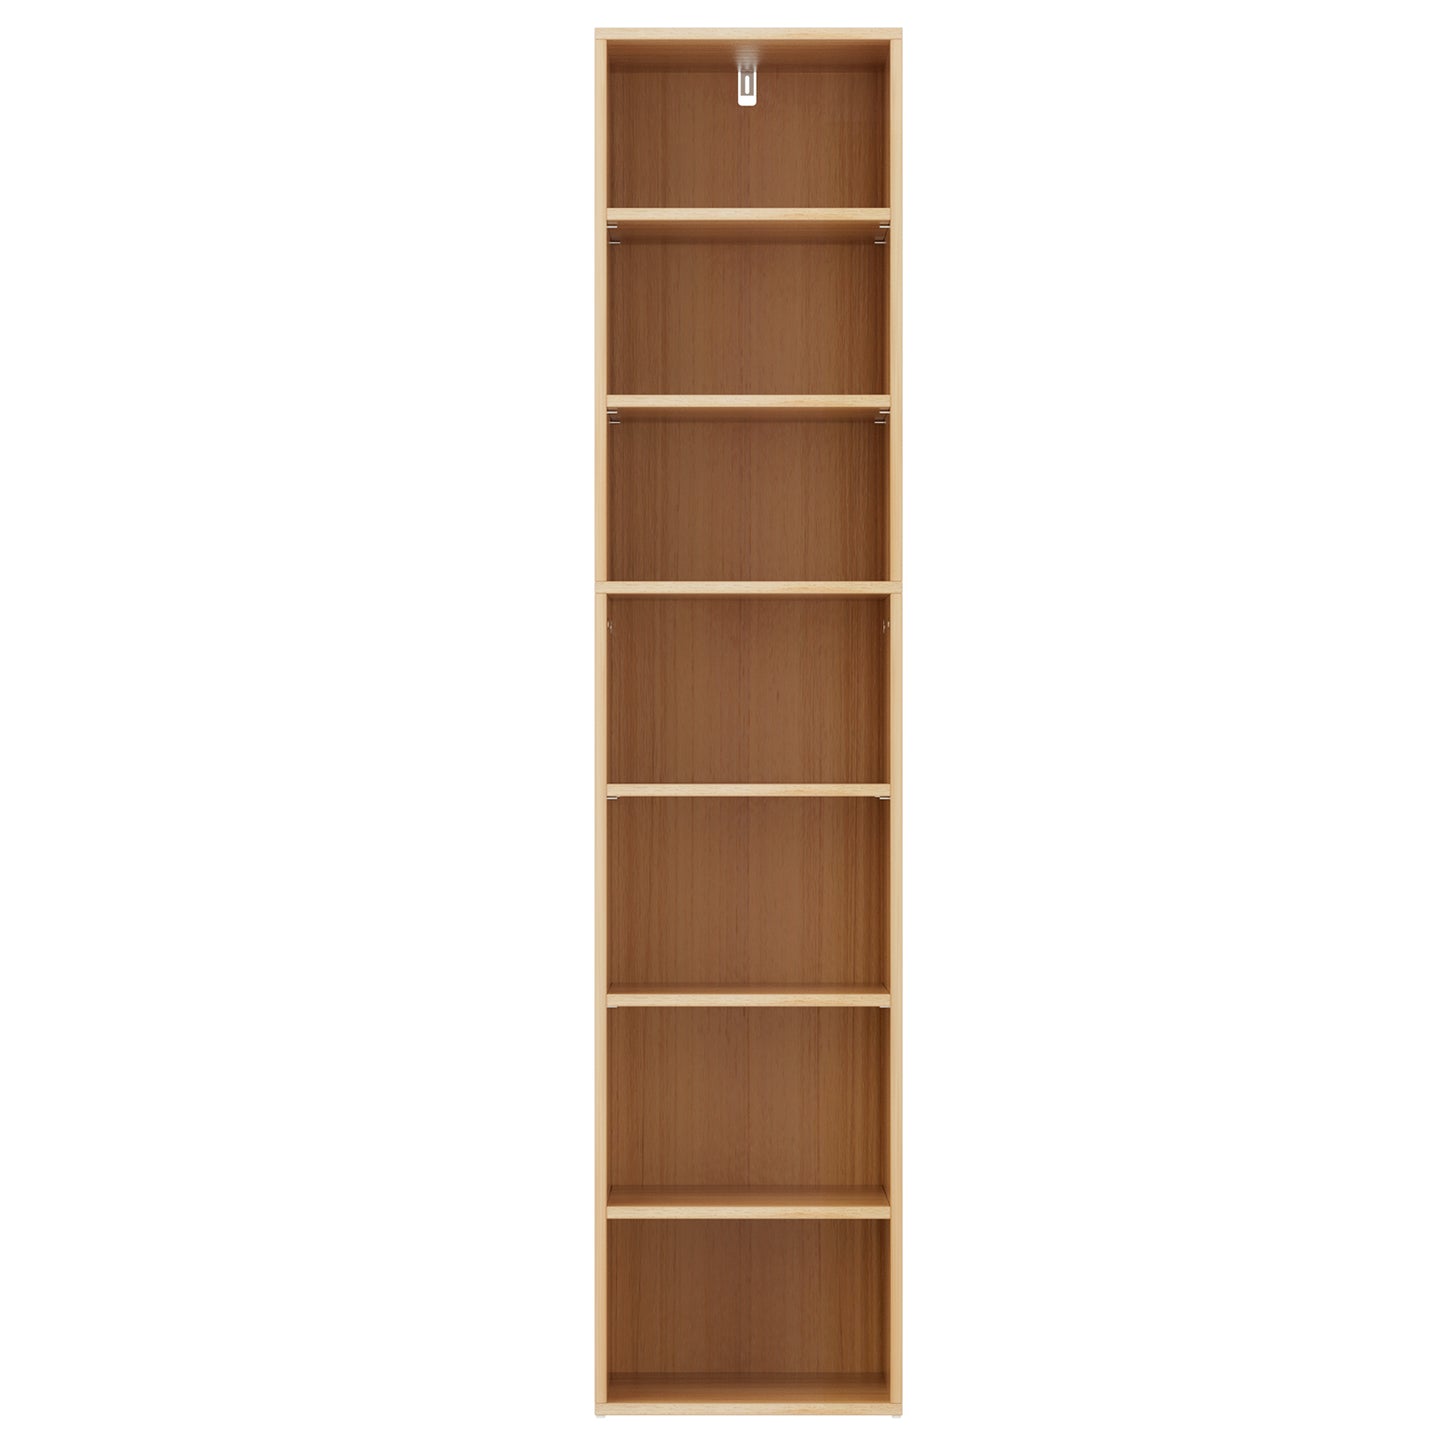 Bookshelf 7 Tiers - Pine